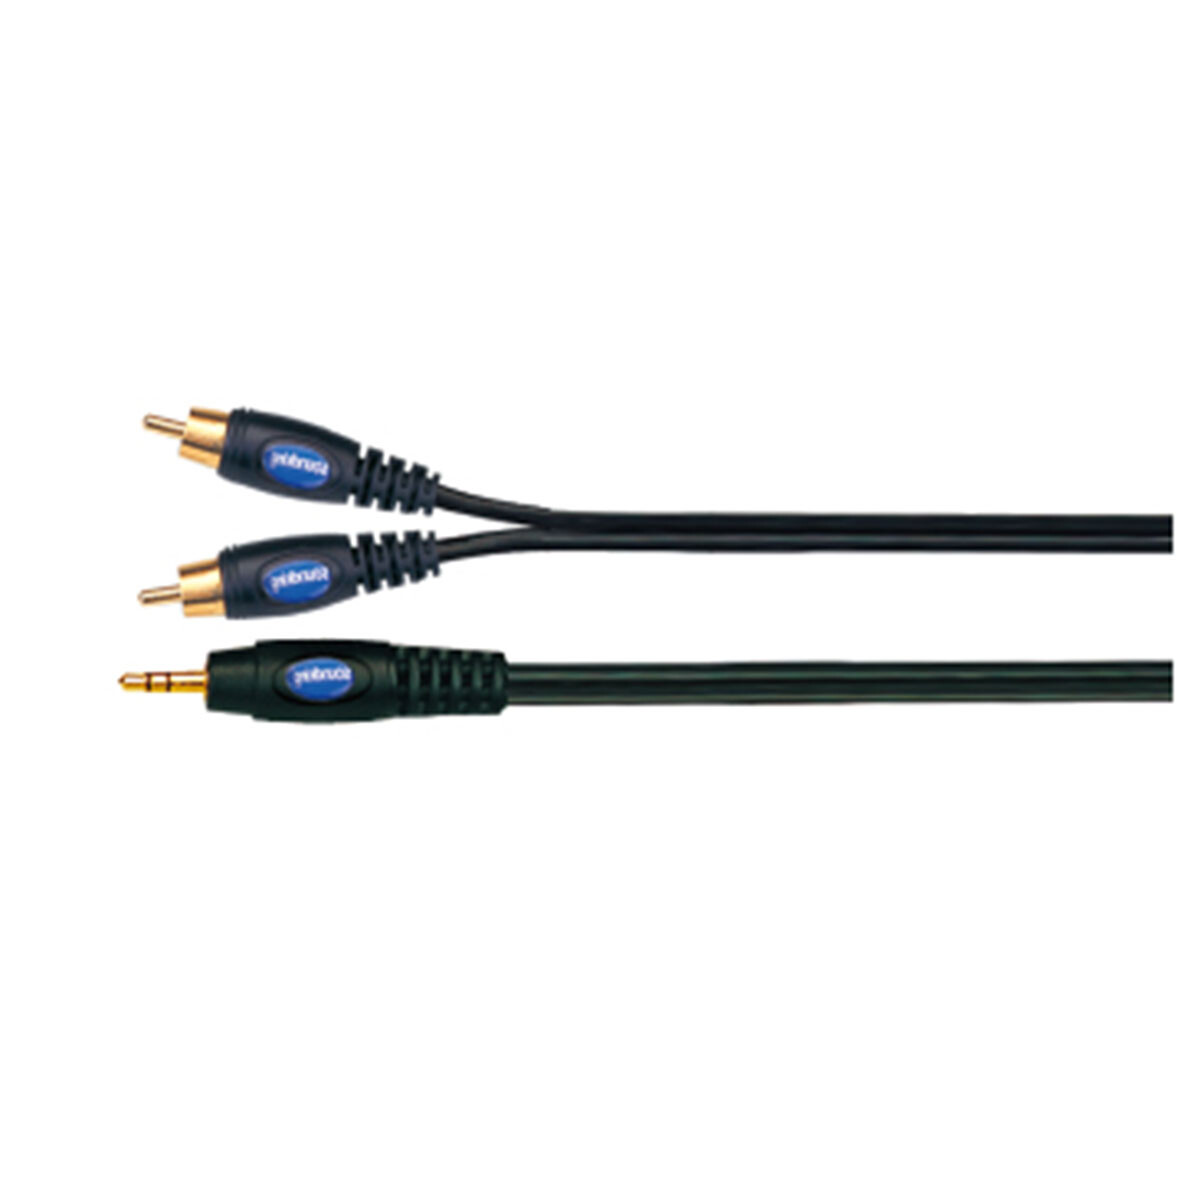 Cable Adaptador Soundking B11475m 1x3,5st+2xrca 5m 